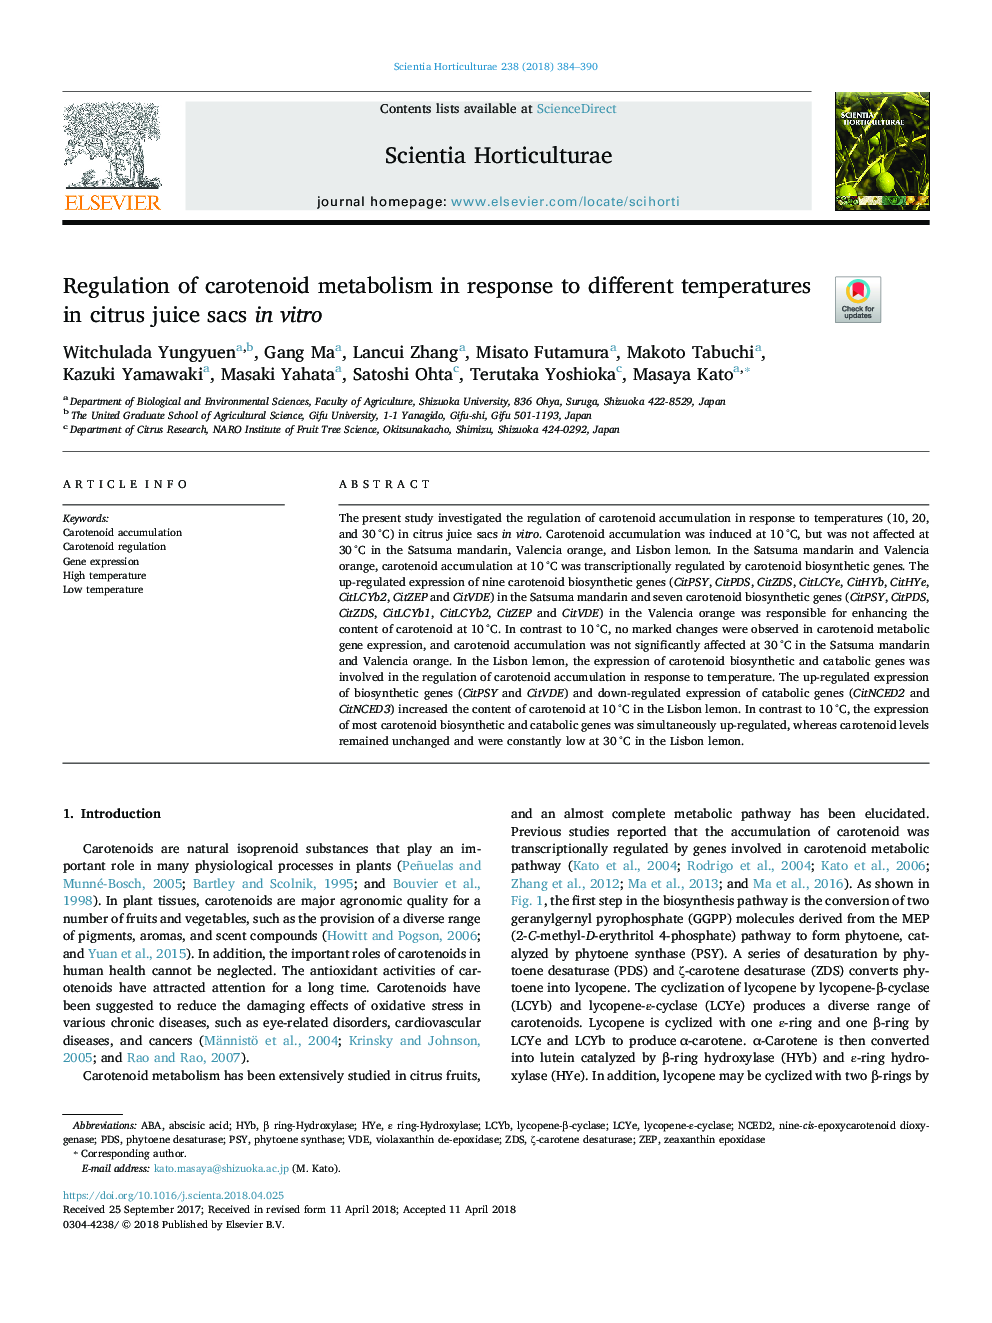 مقررات متابولیسم کاروتنوئید در پاسخ به دماهای مختلف در کیسه های آب مرکبات در 